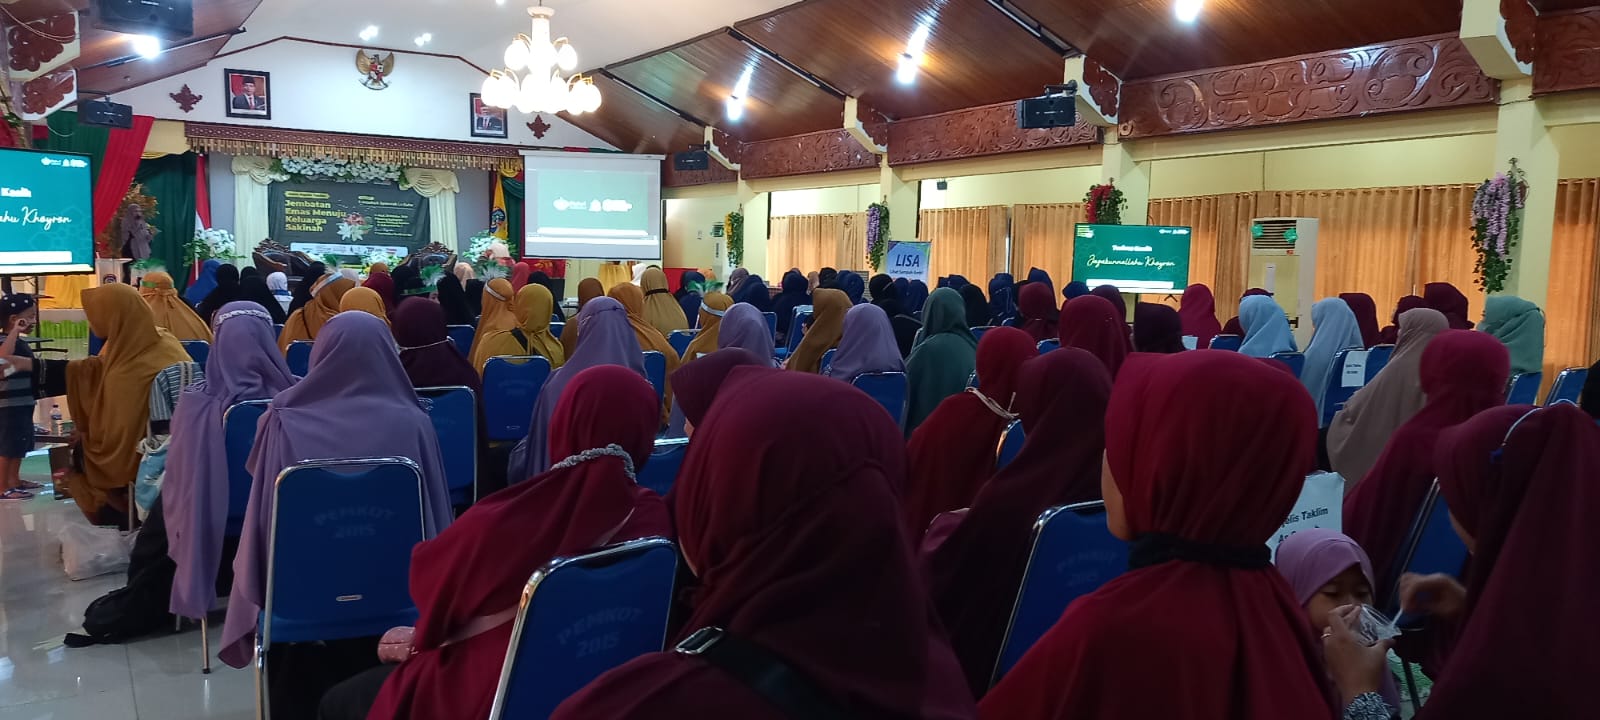 Kemenag Kalimantan Utara Ingatkan Tugas Utama Istri Menghadirkan Sakinah dalam Keluarga.